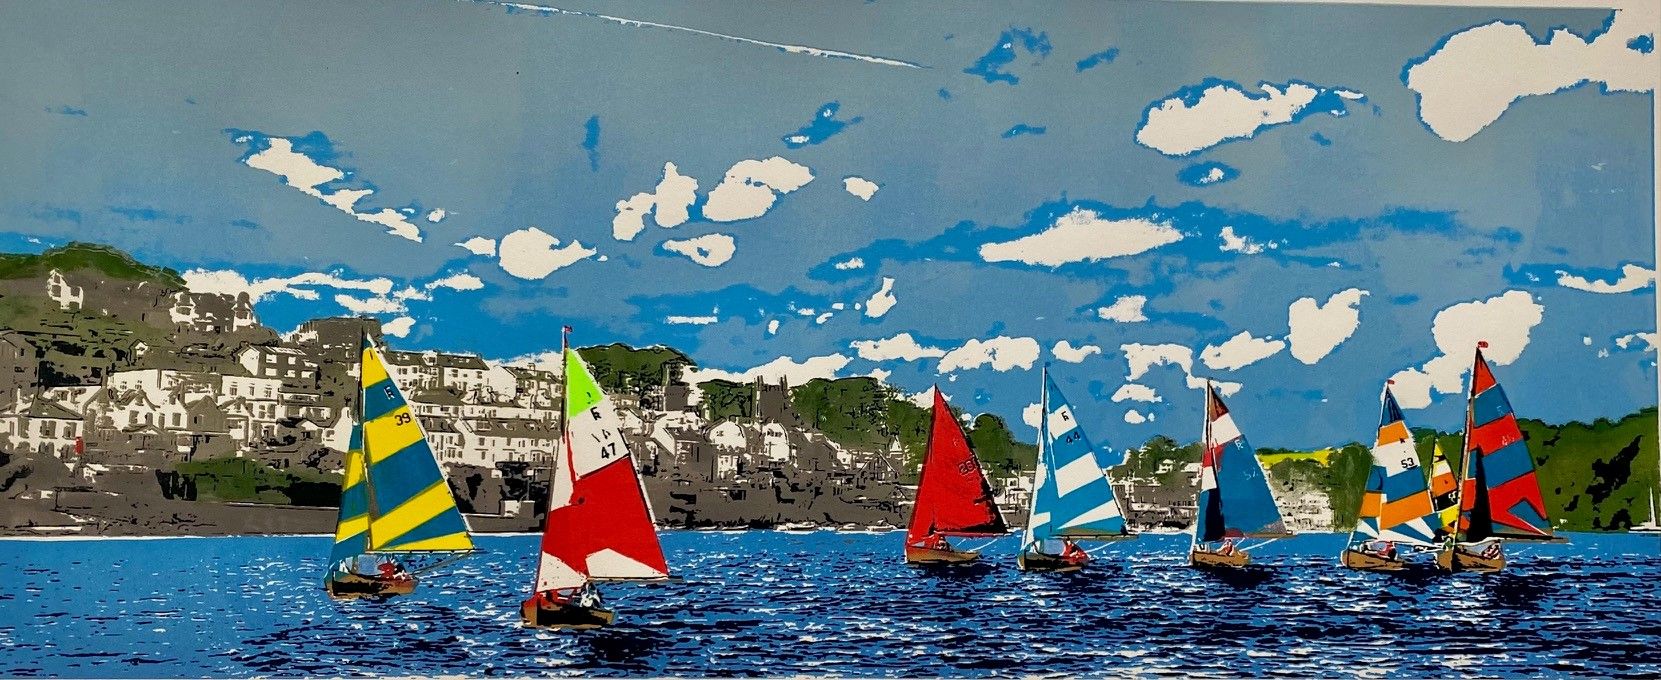 Fowey Sailing by Robyn Forbes